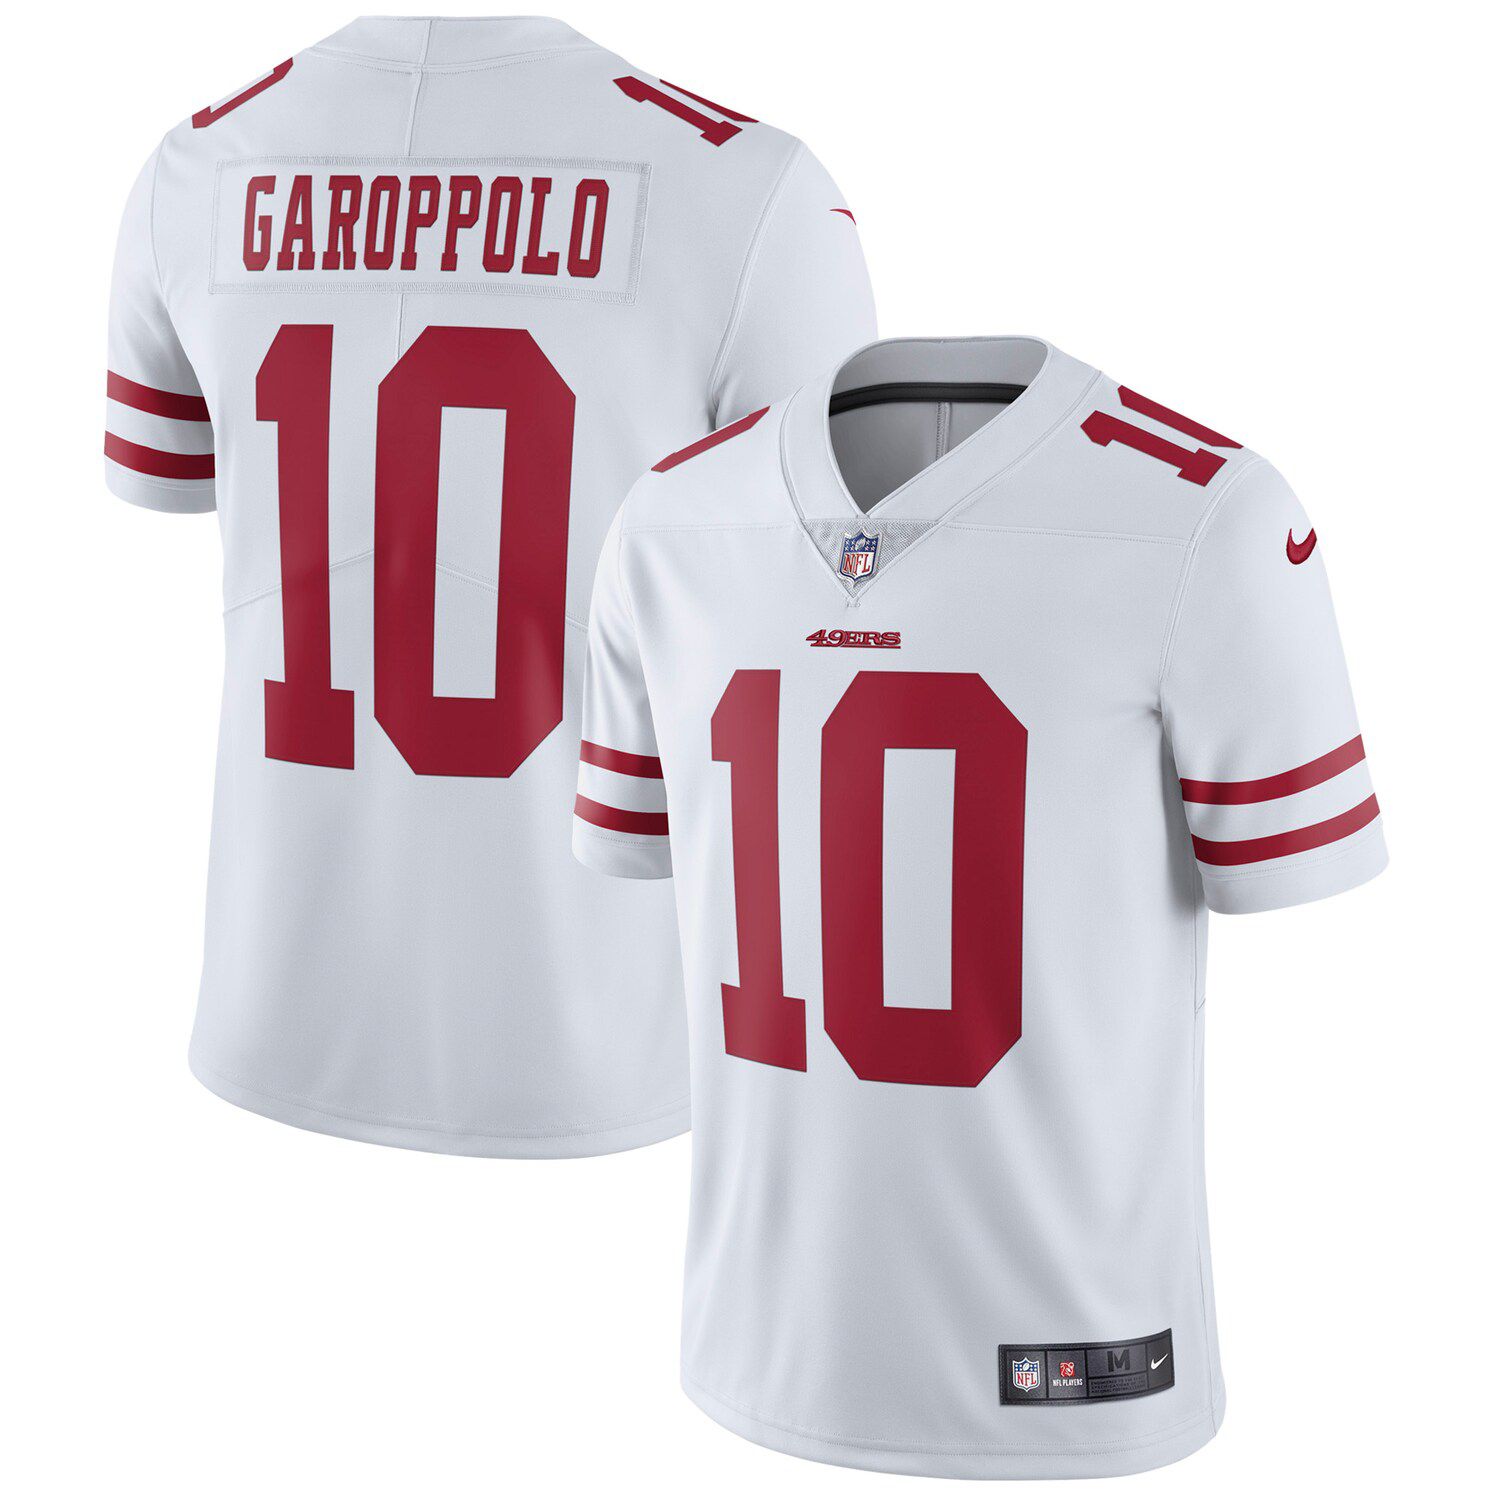 49ers vapor untouchable jersey